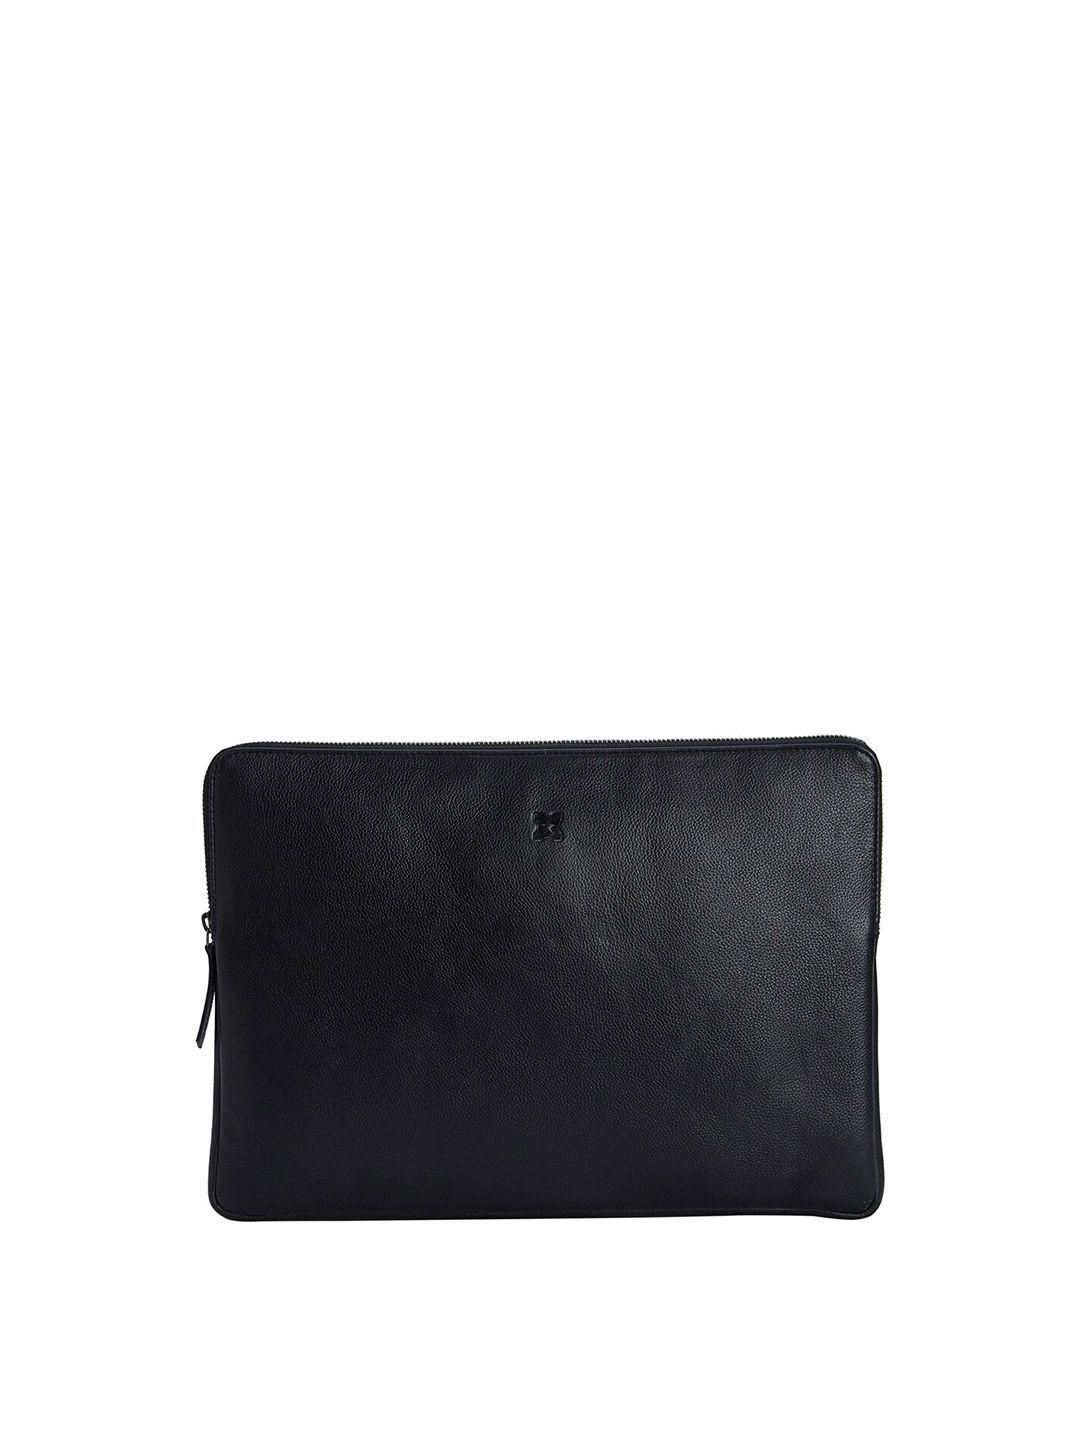 merecer melhor black 14 inch leather laptop sleeve